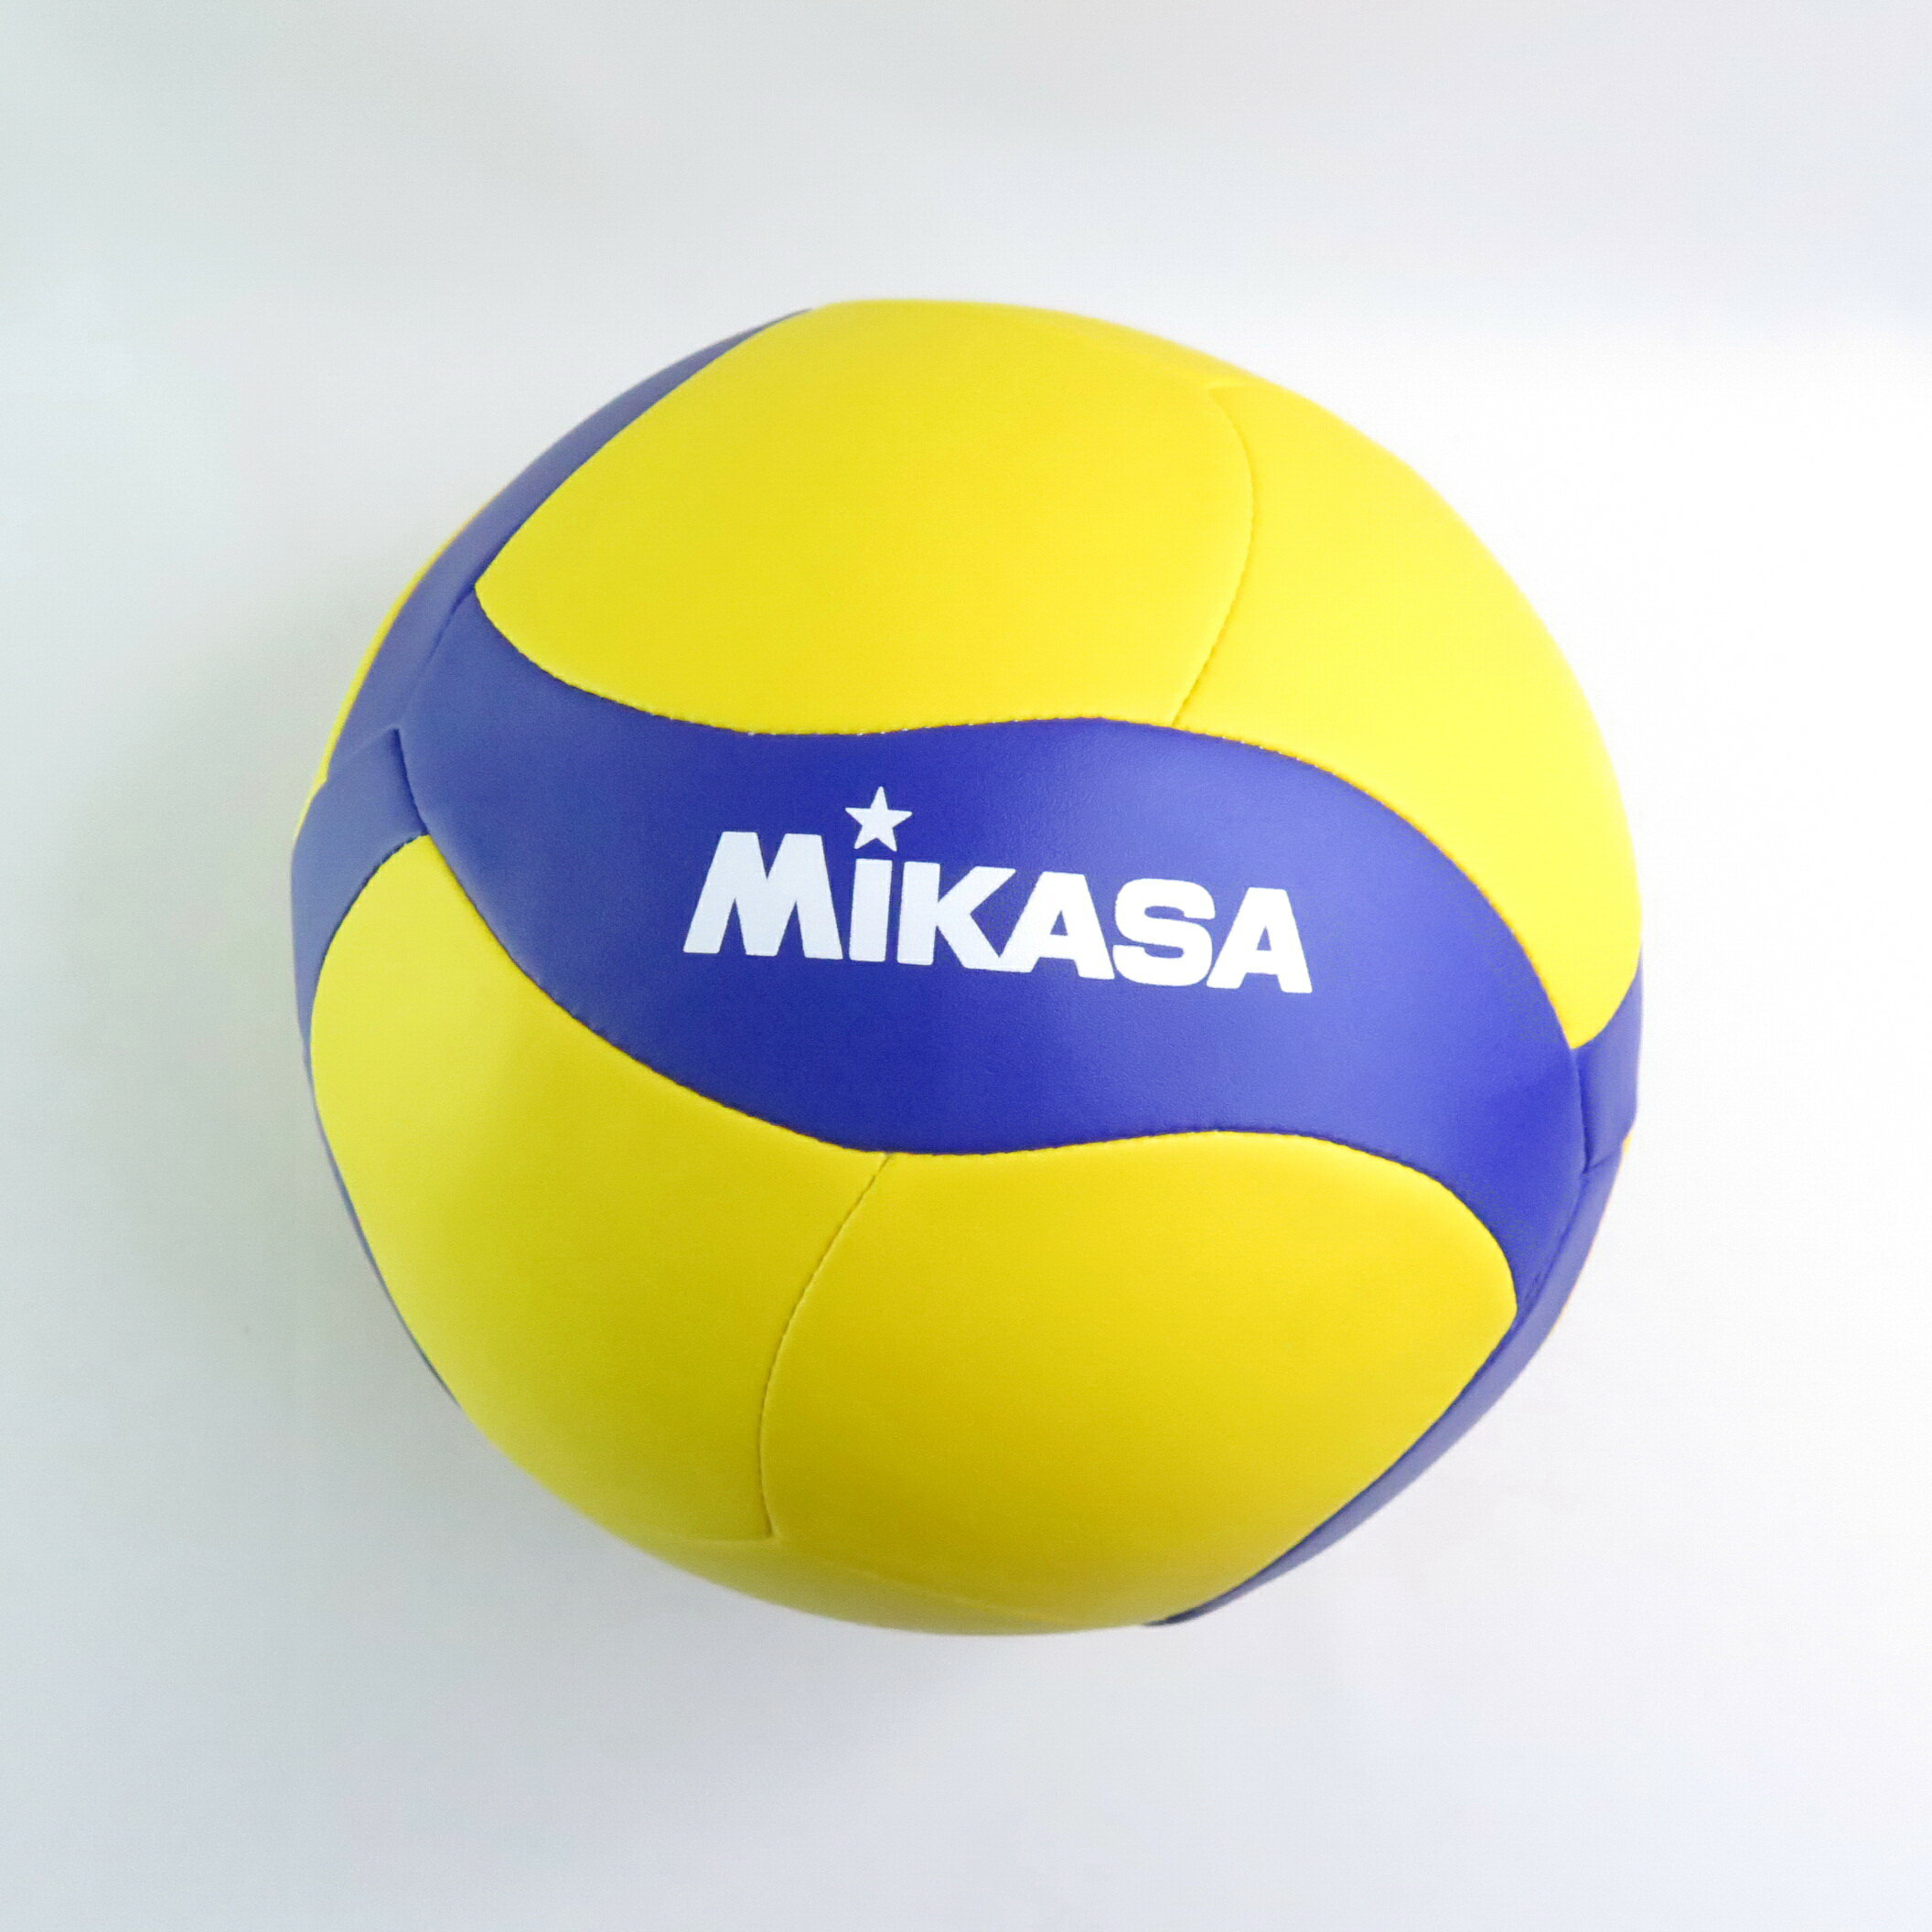 MIKASA MKV360W 螺旋形合成皮排球 FIVB認證 排球少年 5號球 黃/藍【iSport愛運動】